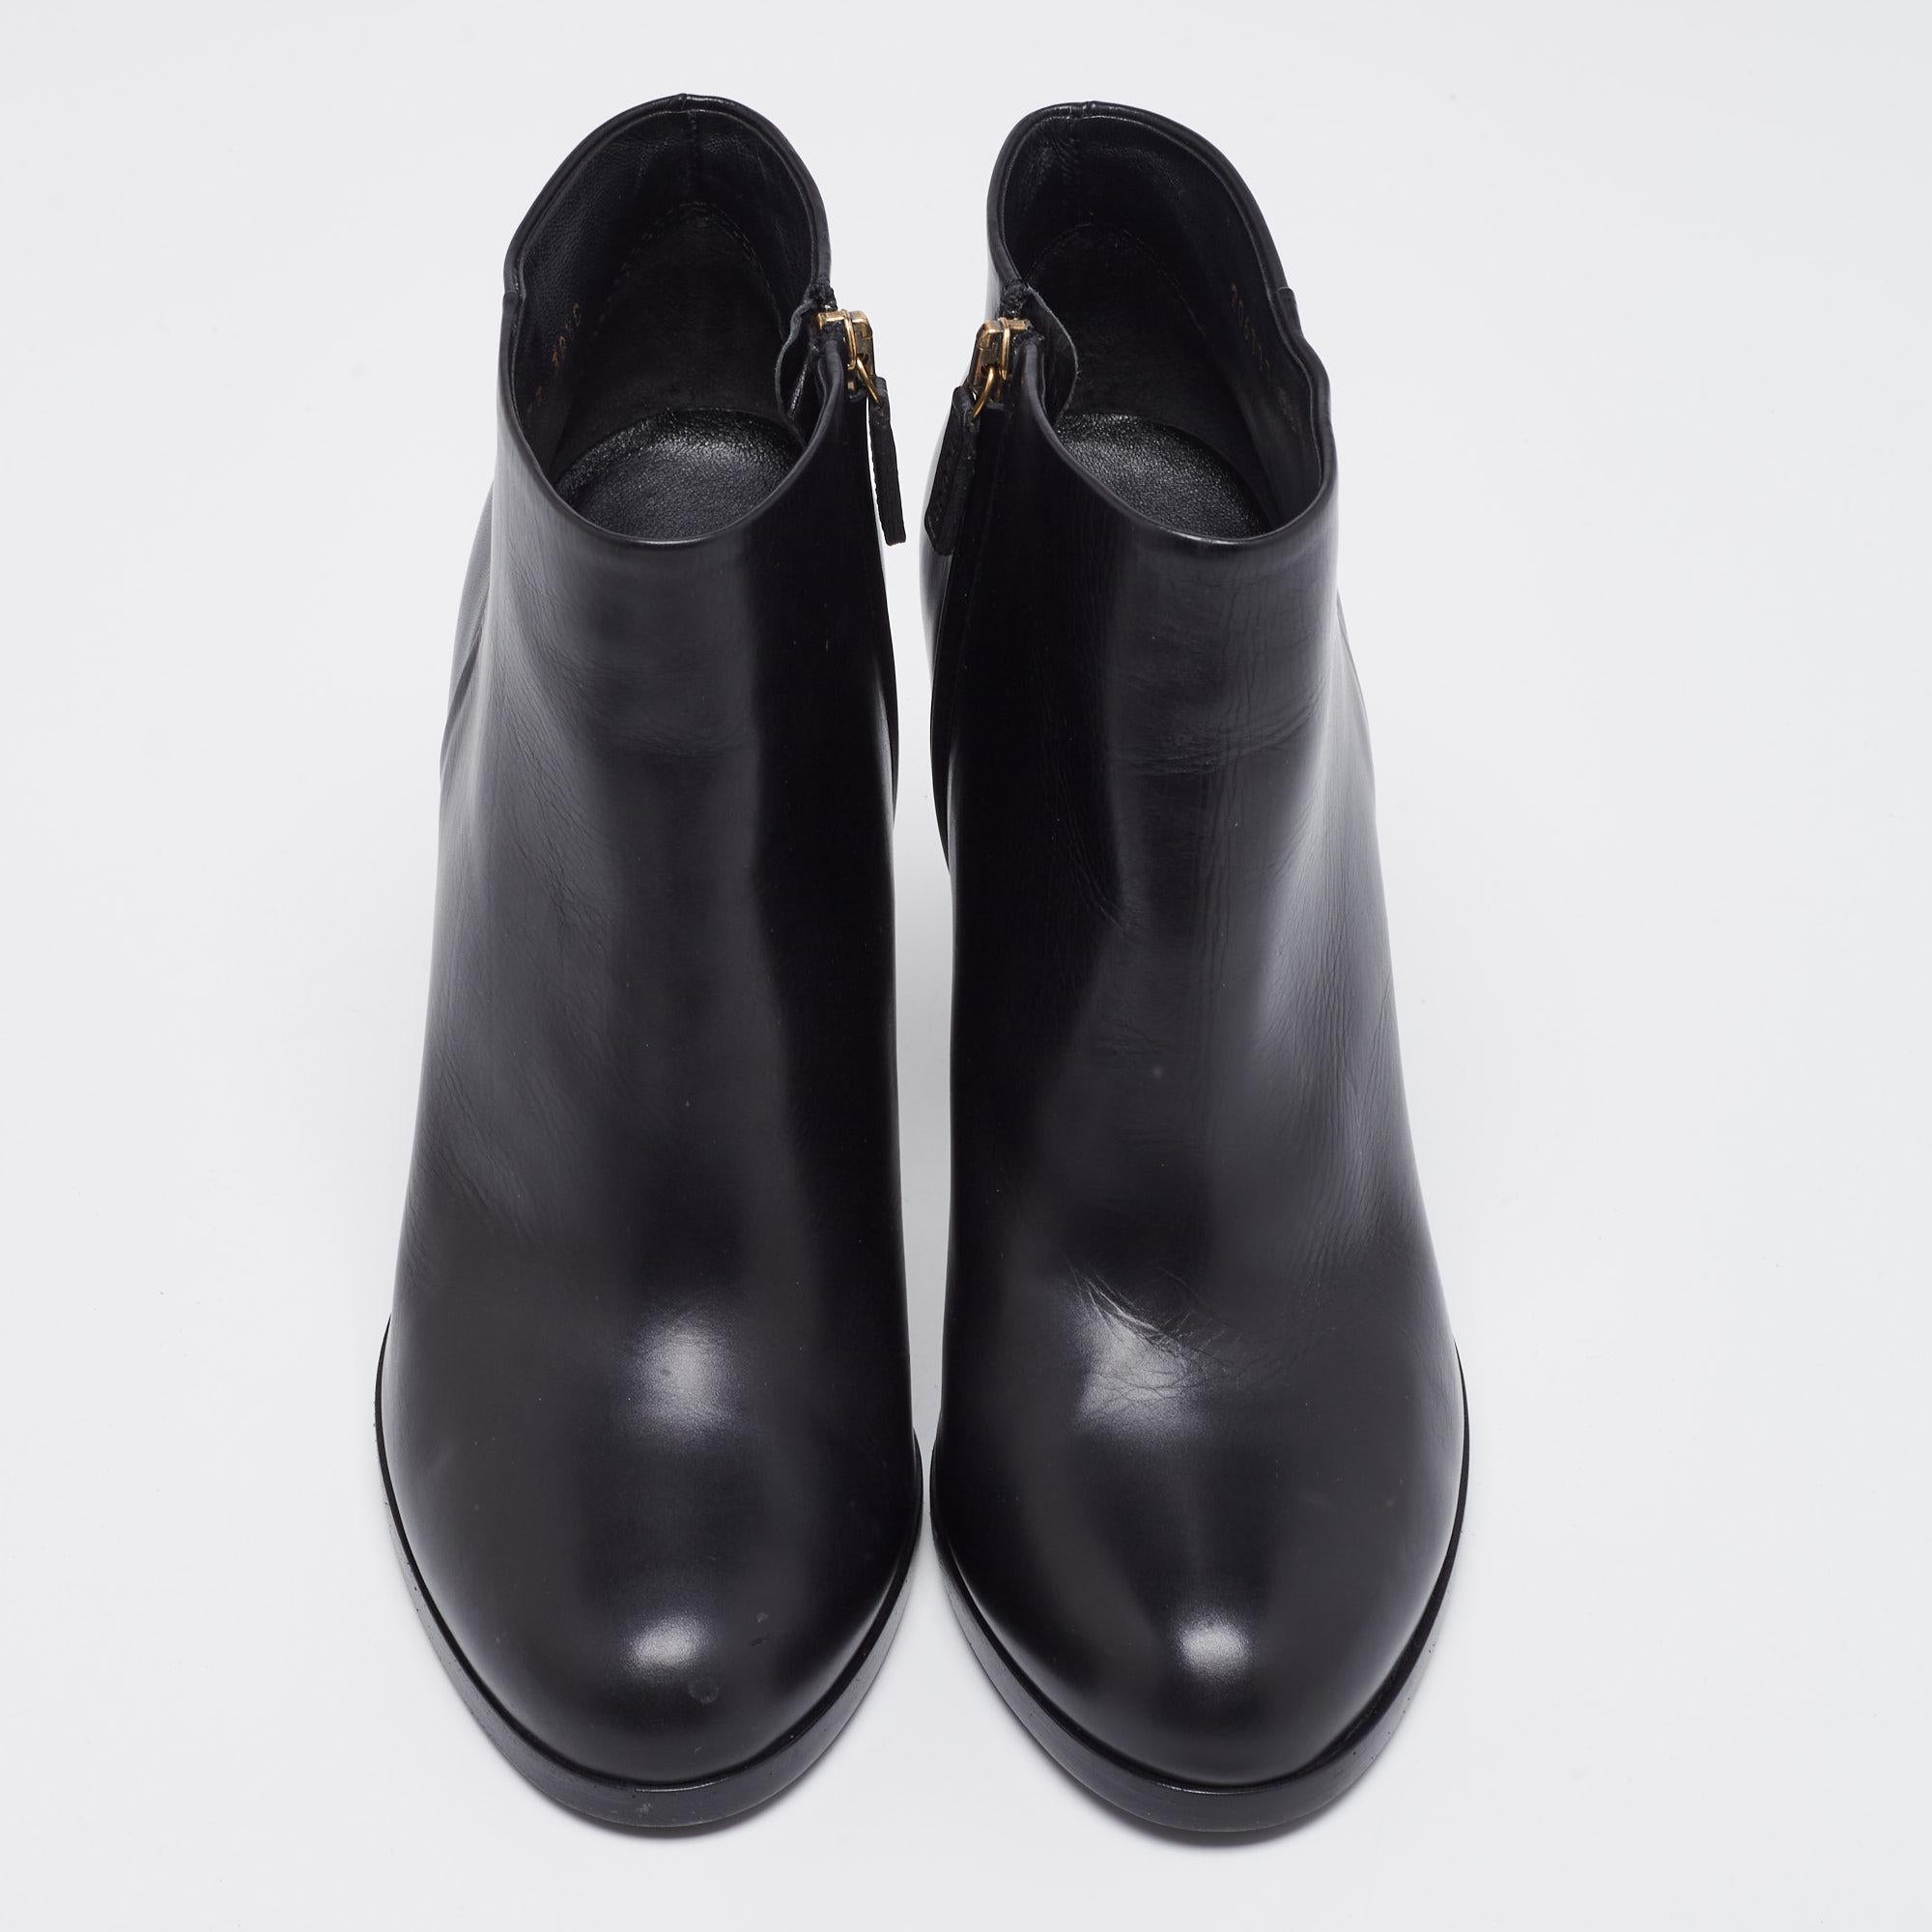 La Maison Gucci apporte raffinement et grâce à votre garde-robe avec ces superbes bottes. Ils sont confectionnés en cuir noir et forment une silhouette longue comme la cheville. Elles sont dotées d'une fermeture à glissière, de matériel de couleur